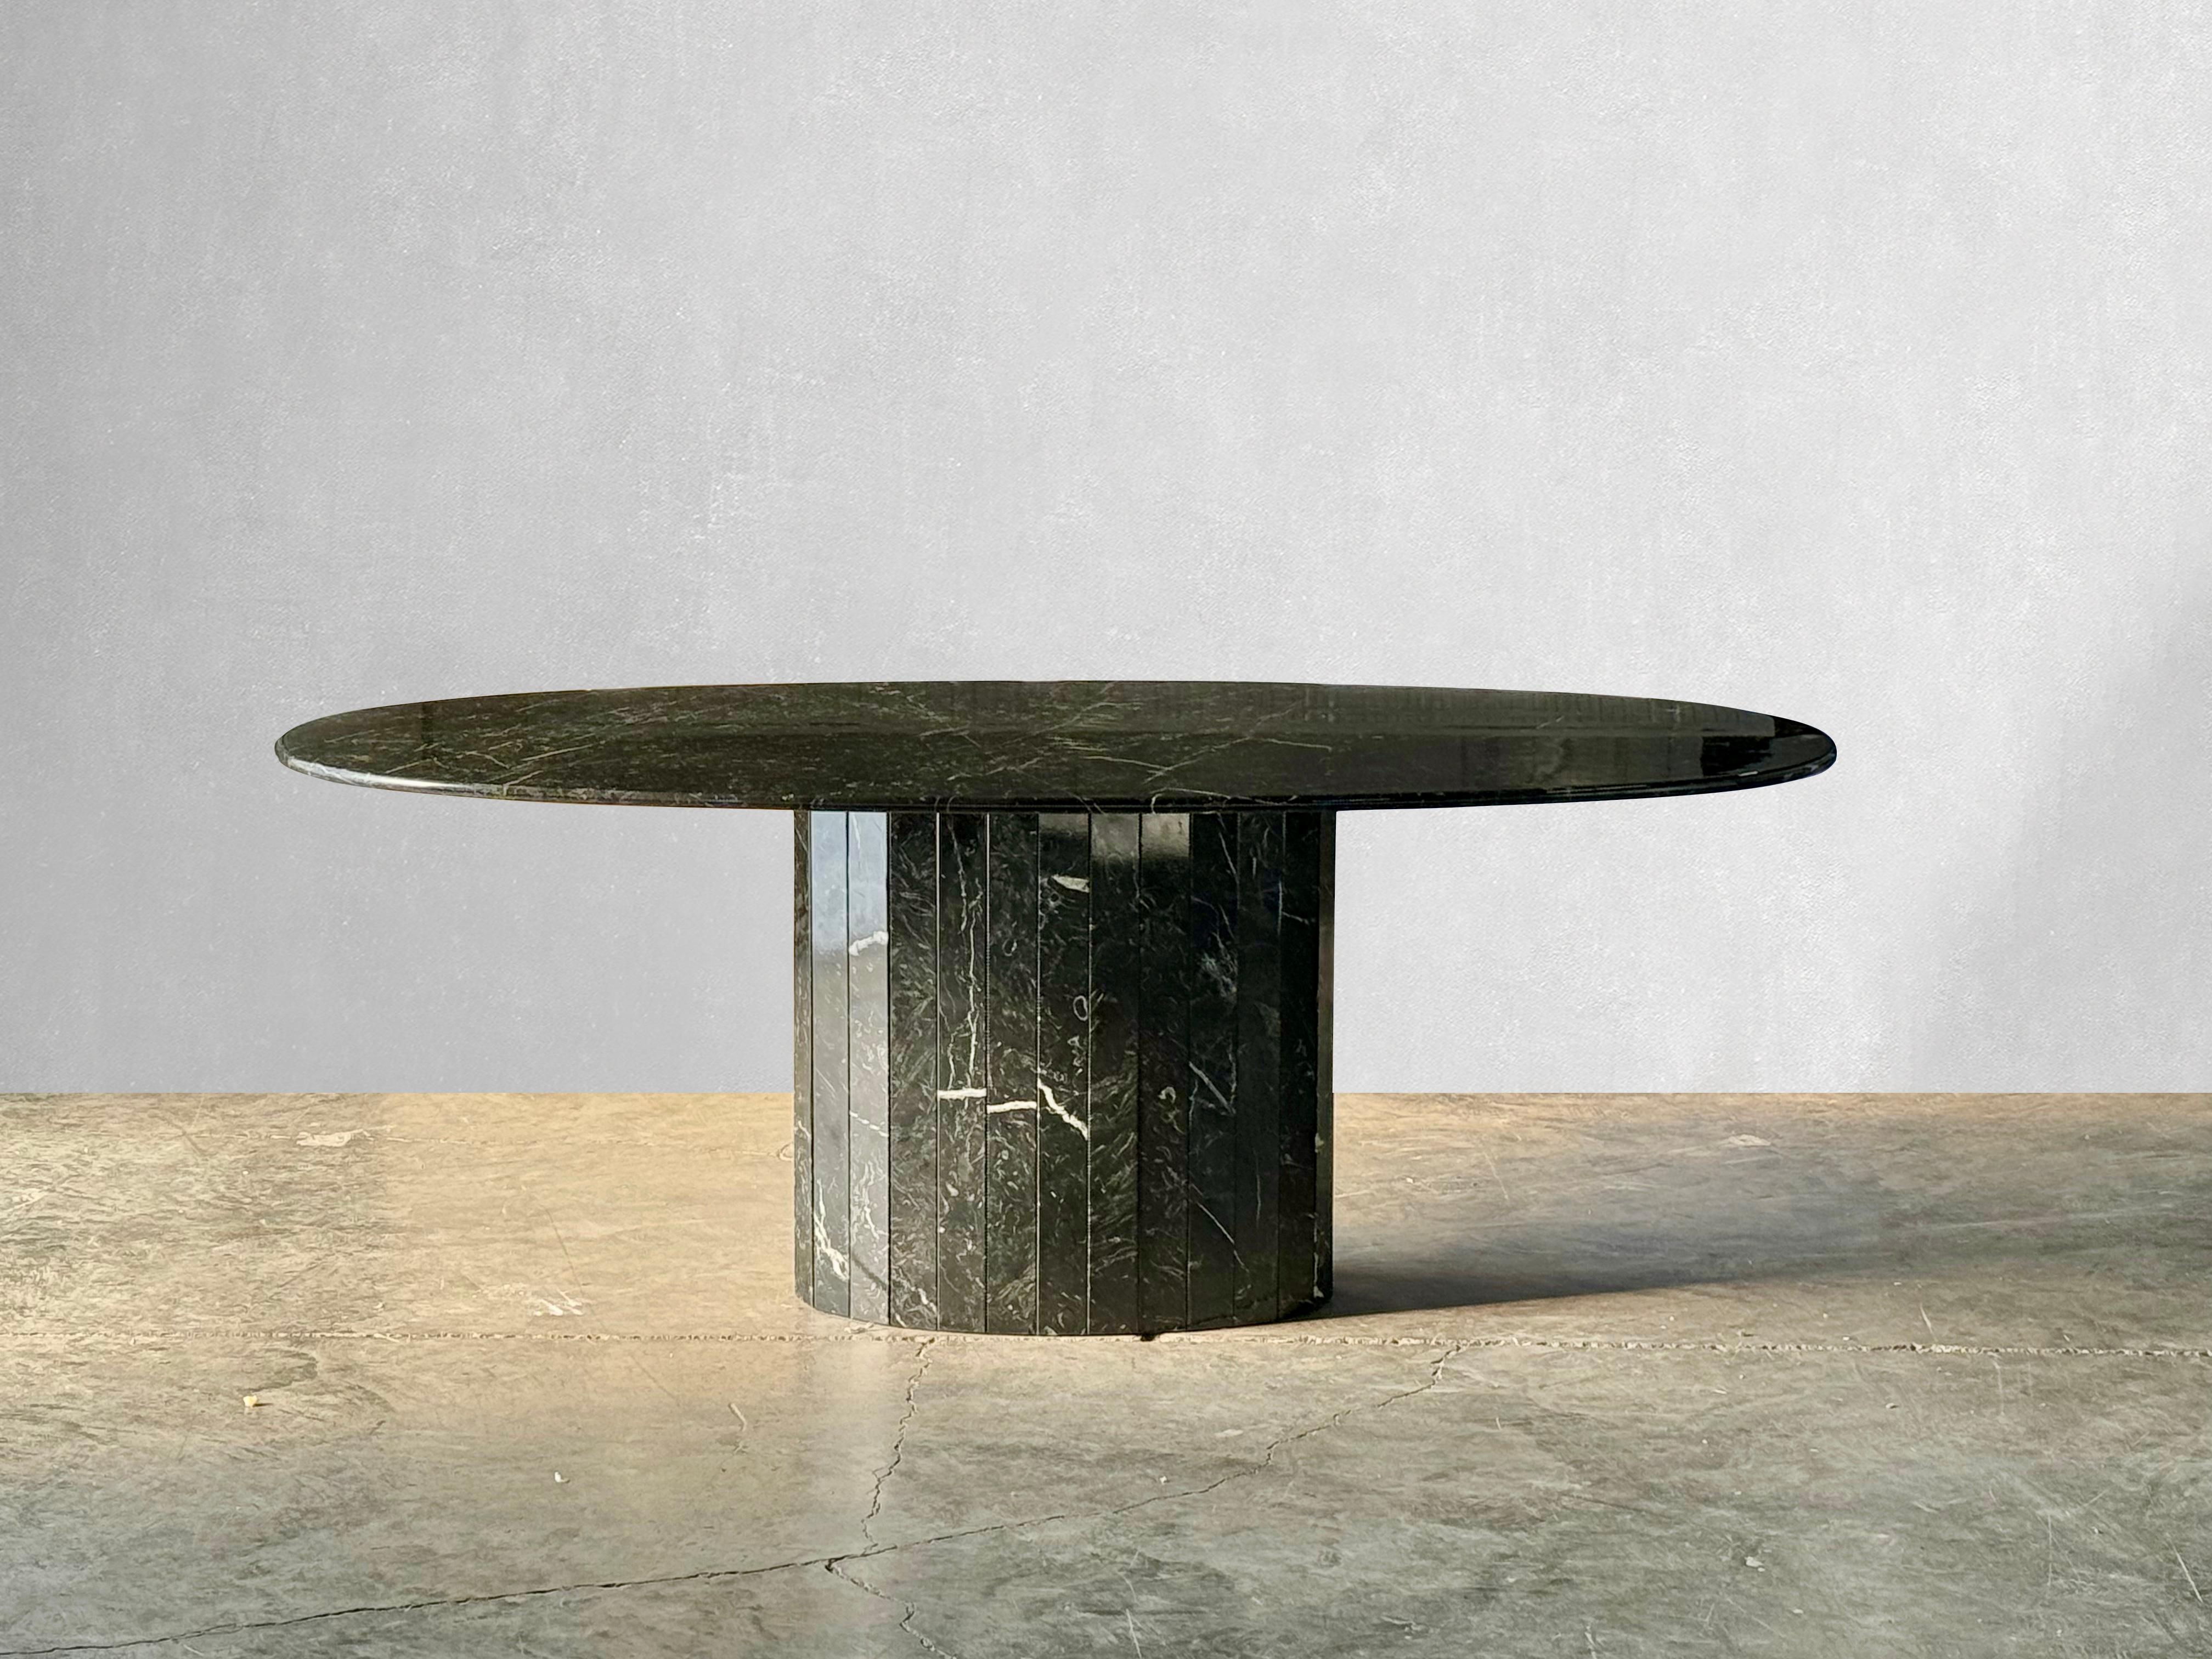 Auffälliger ovaler Vintage-Esstisch aus Nero Marquina-Marmor. 

Nero Marquina ist ein hochwertiger Stein, der aus dem Baskenland im Norden Spaniens stammt. Dieser Tisch hat eine schöne milchig-weiße Maserung und einen geriffelten Lattenrost. 